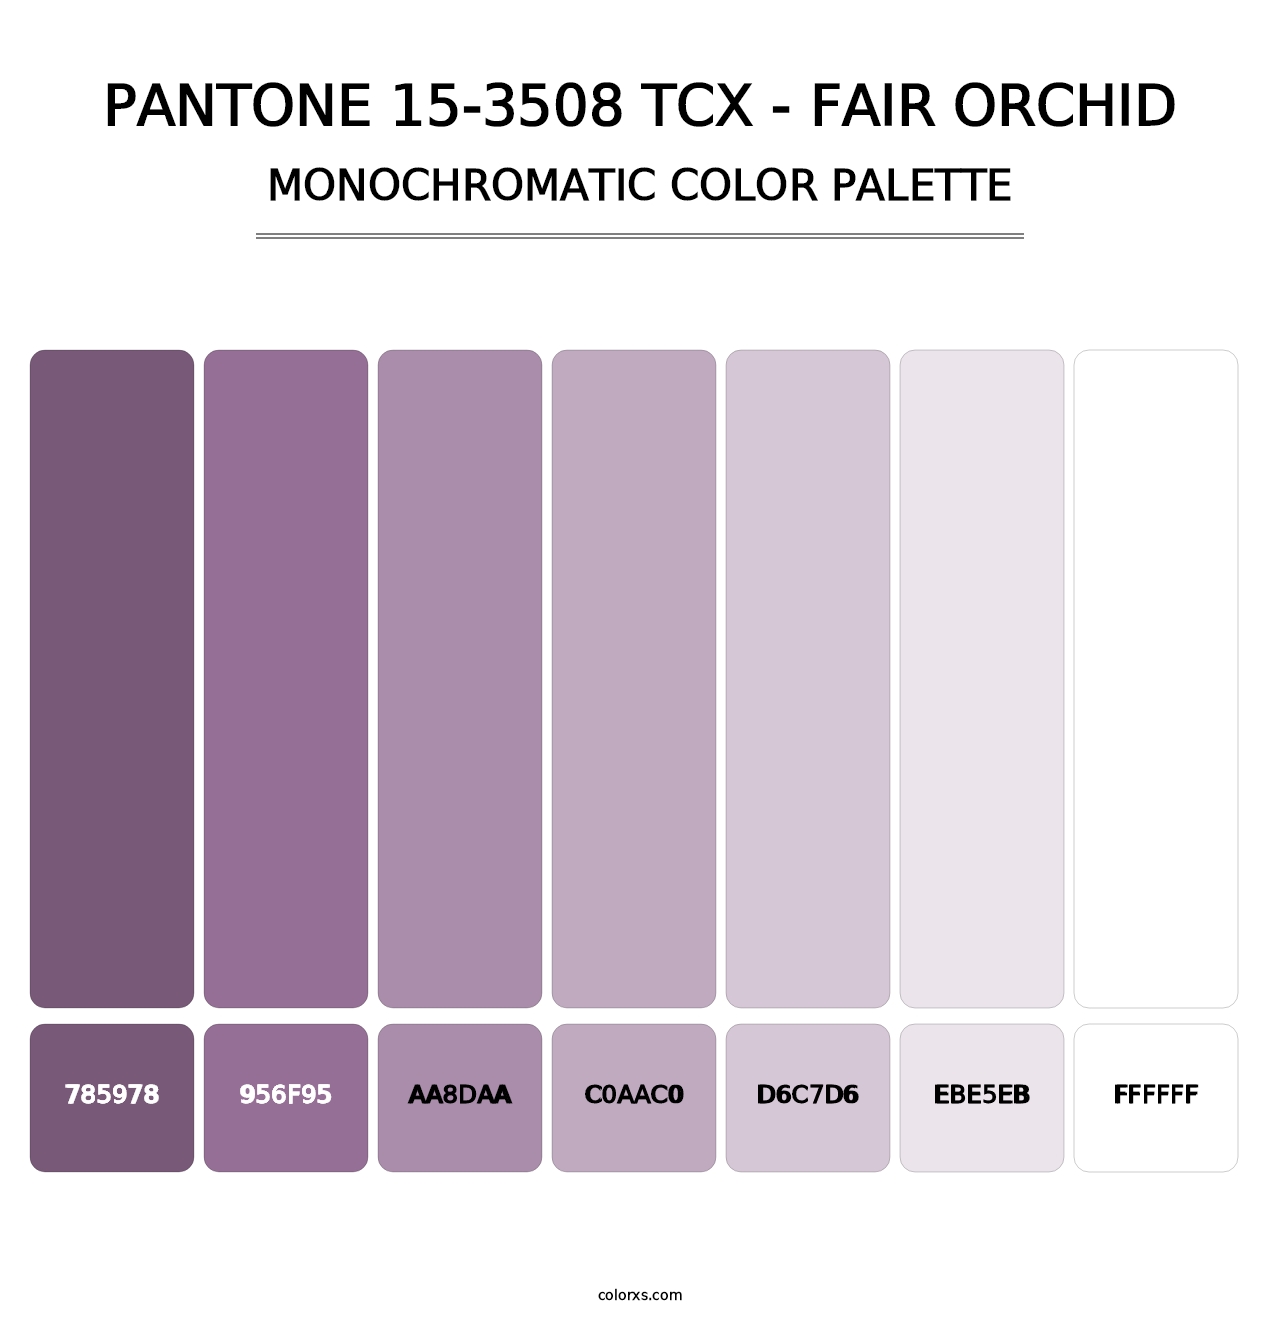 PANTONE 15-3508 TCX - Fair Orchid - Monochromatic Color Palette